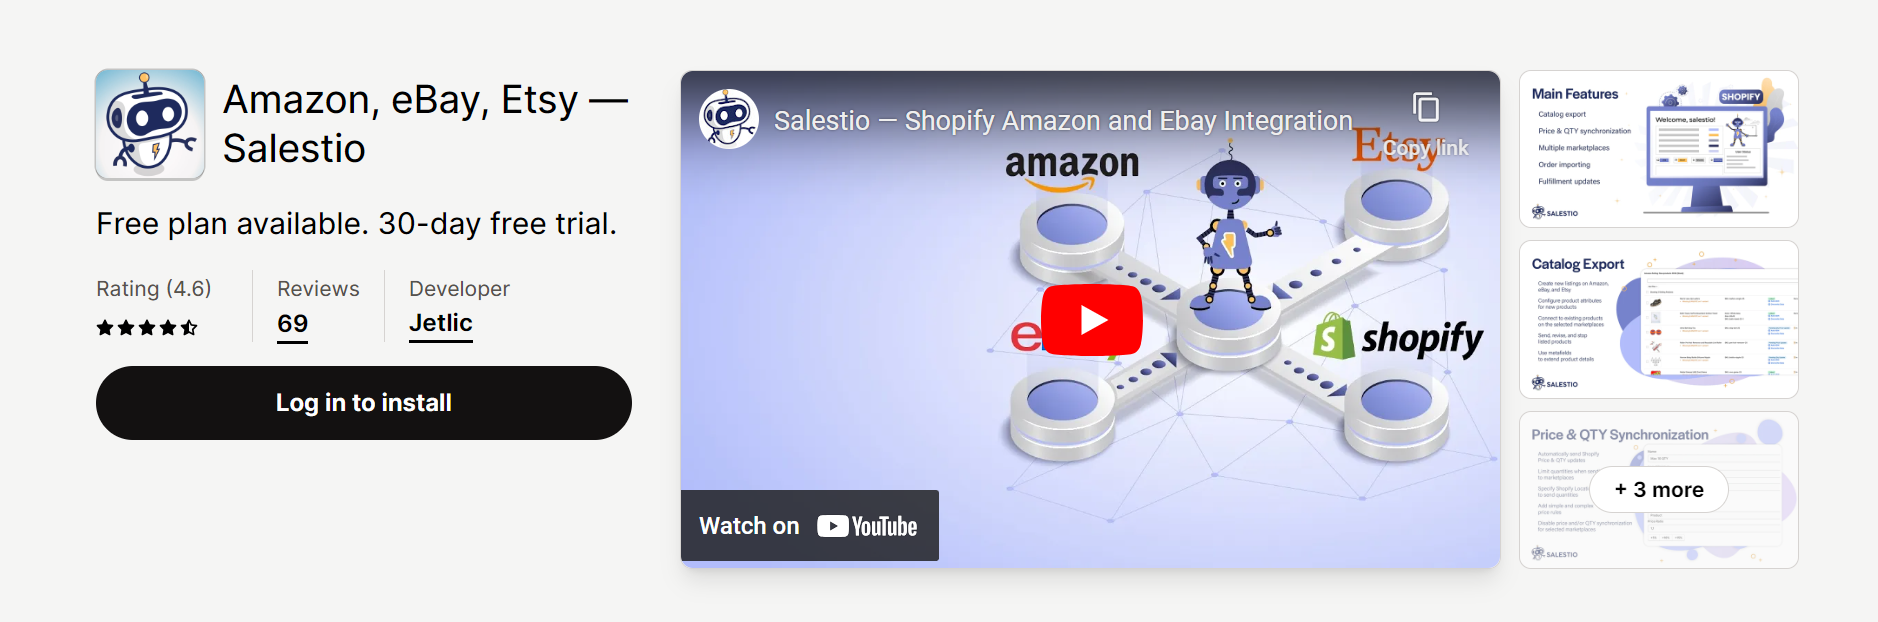 Amazon, eBay, Etsy — Salestio